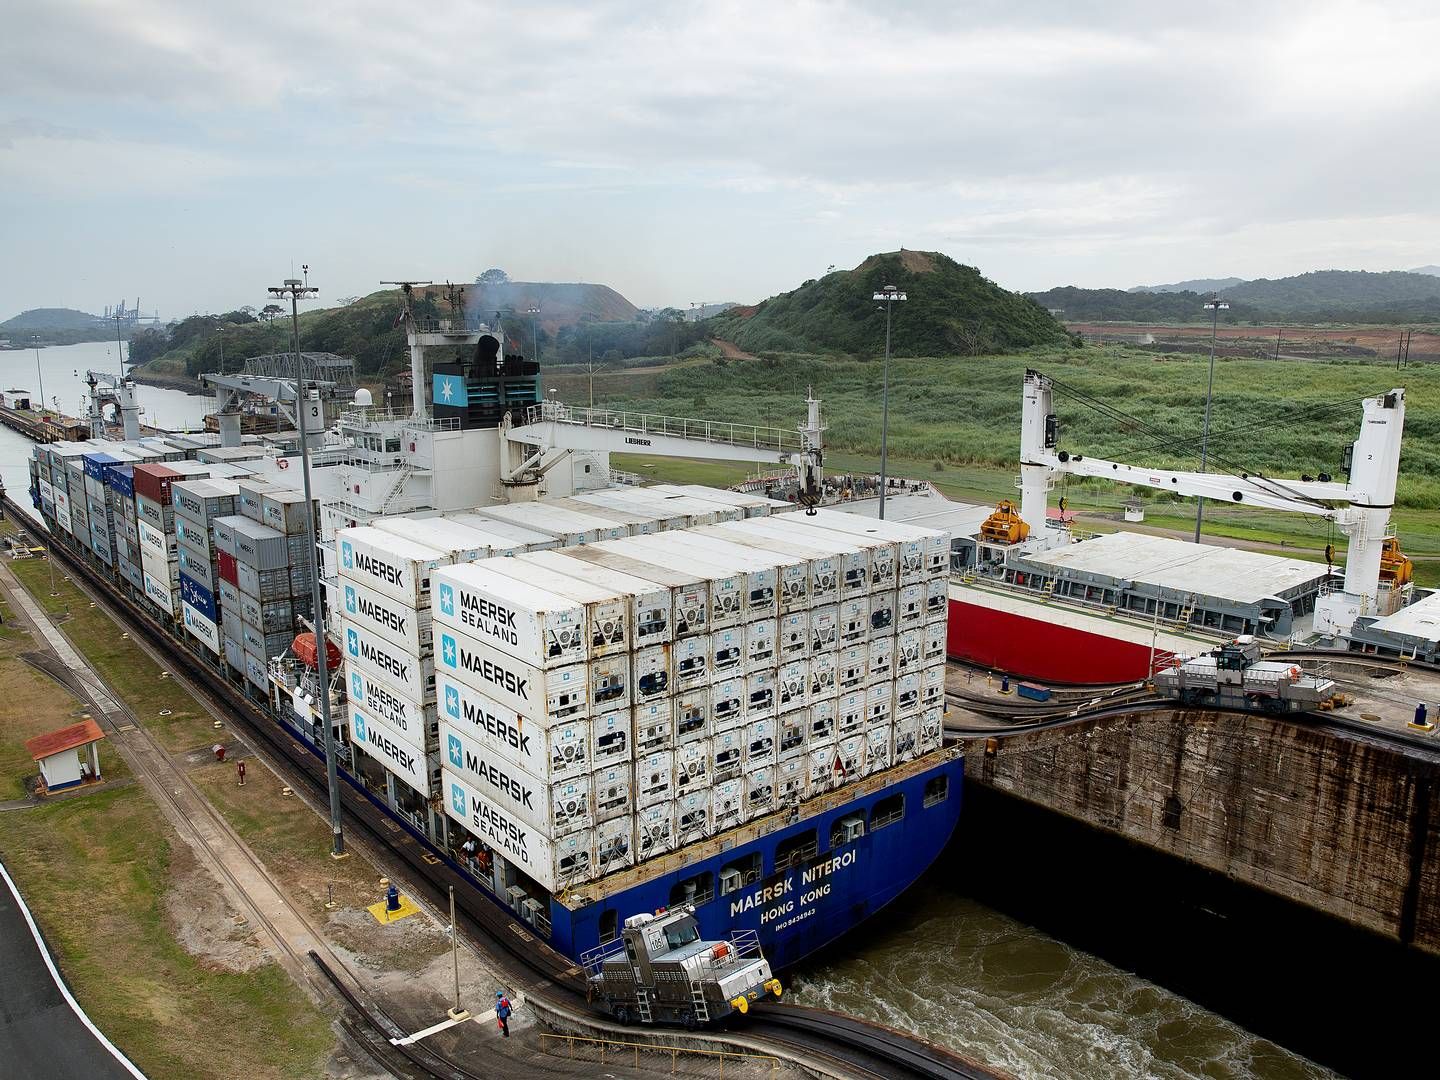 I modsætning til tørlastskibe sejler containerskibe typisk efter faste tidsplaner, hvilket gør det lettere for dem at booke transittider gennem Panamakanalen. Derfor har mange tørlastoperatører valgt at omdirigere deres skibe, skriver Bimco i analyse.